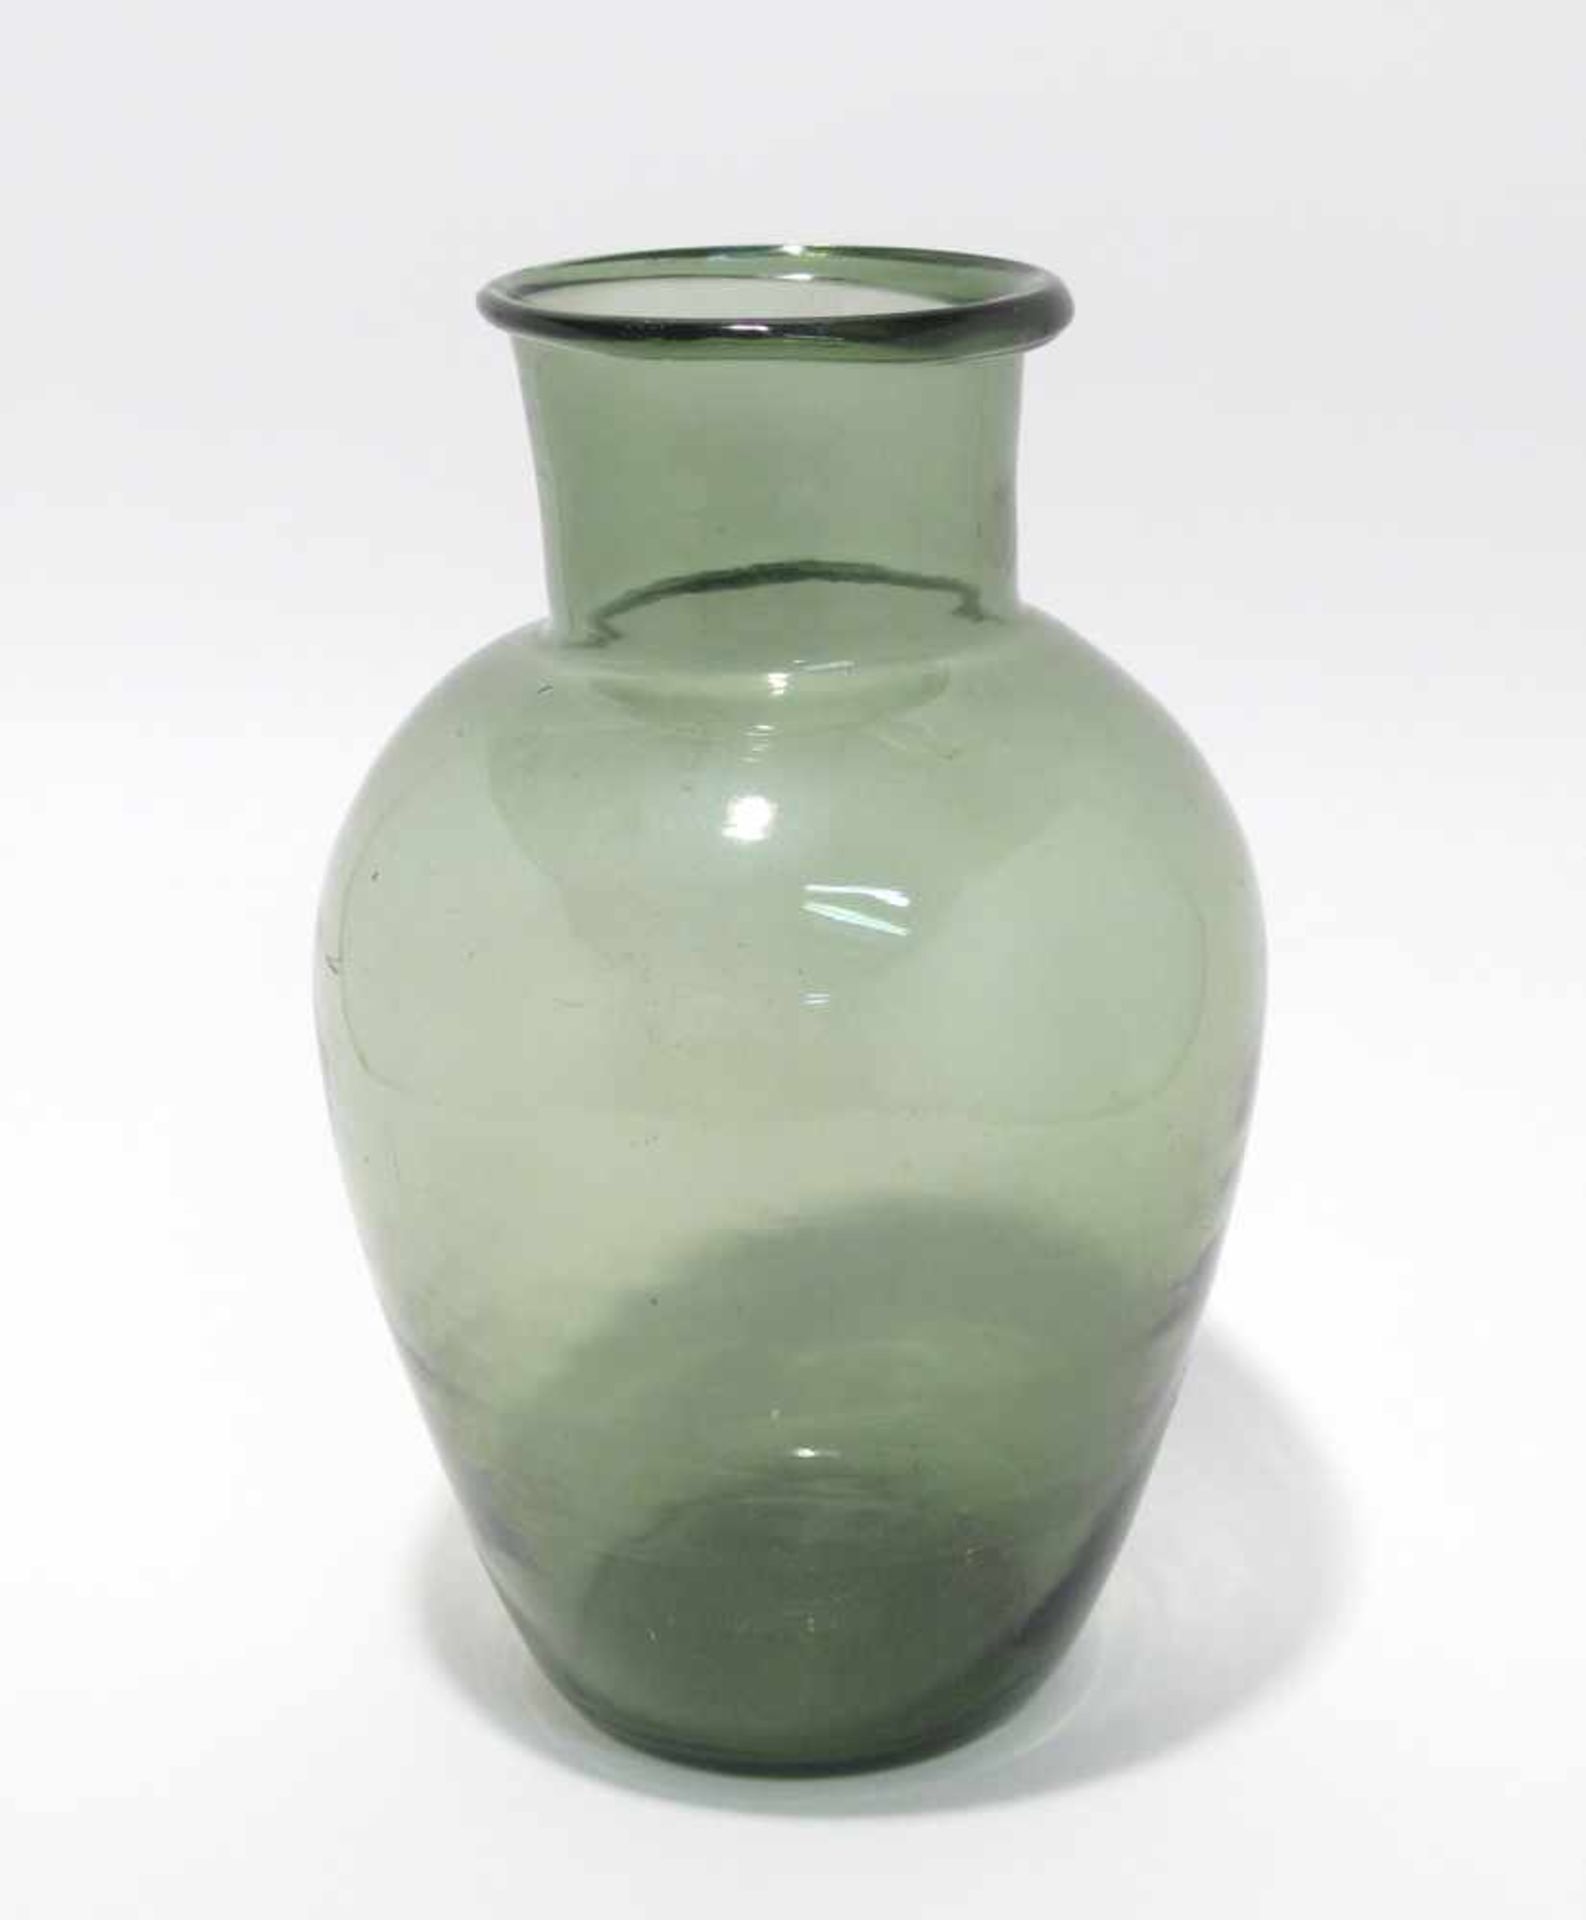 Vase Wohl Lothringen, 19. Jh. Grünes Glas. Eiförmig mit zylindrischem Hals. H. 26,5 cm.